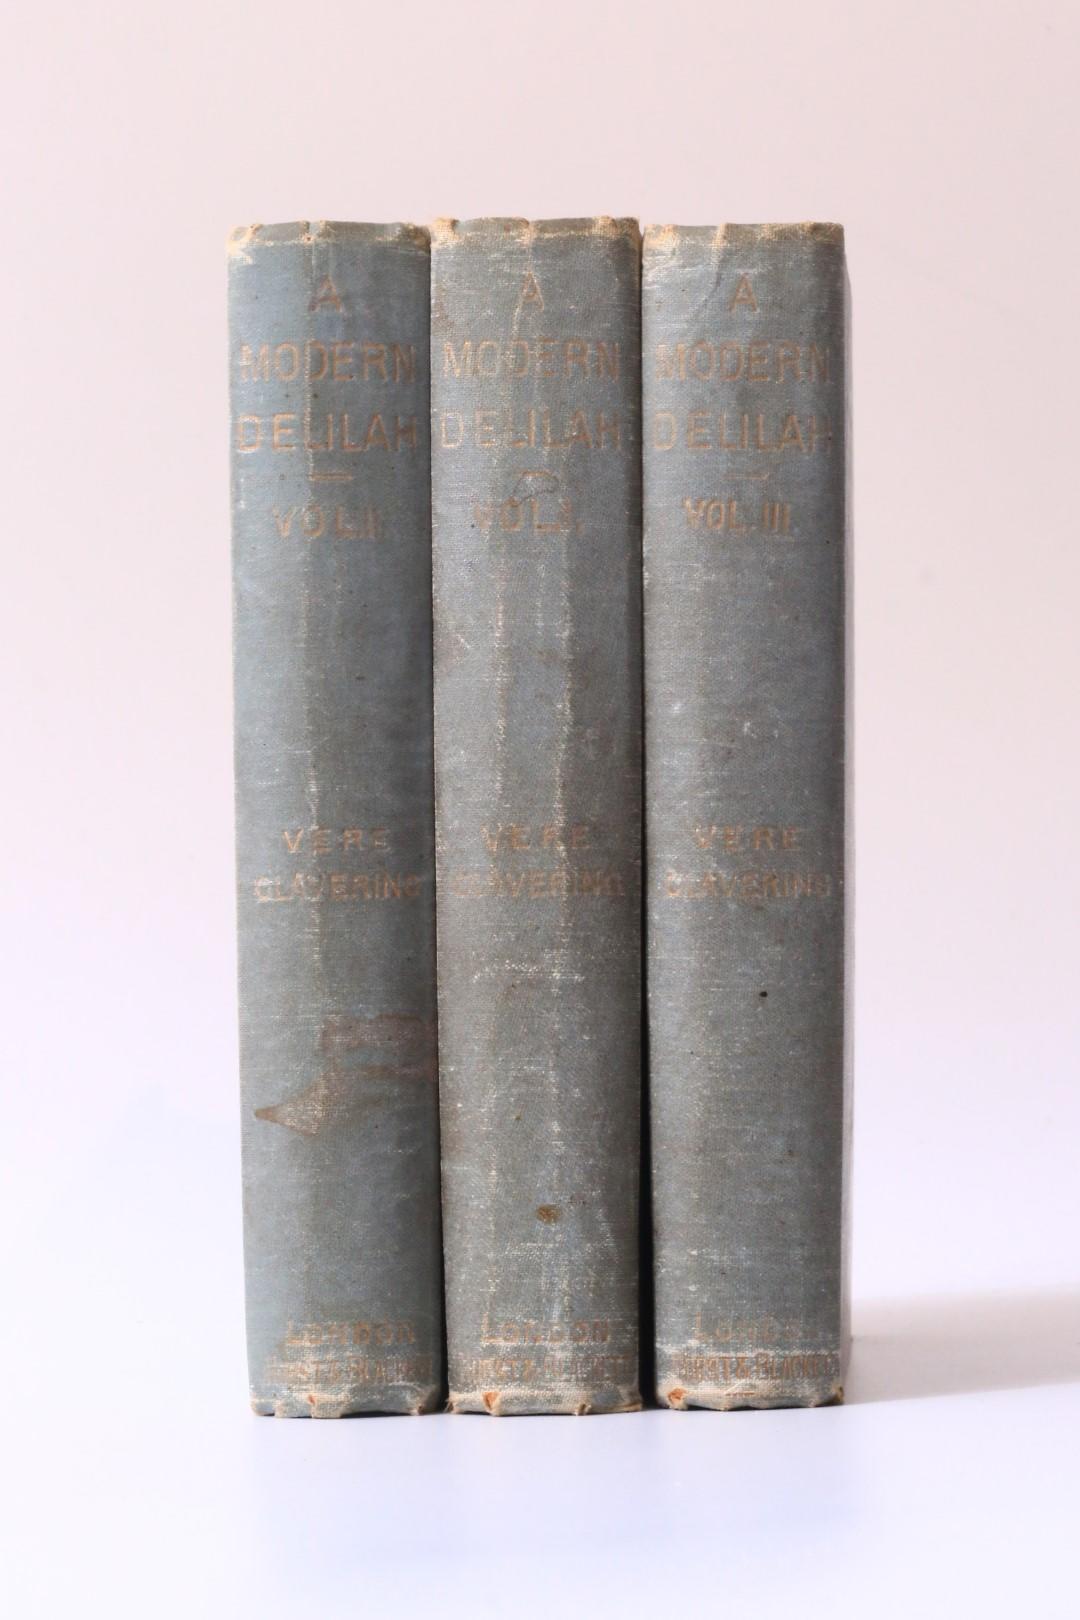 Vere Clavering - A Modern Delilah - Hurst & Blackett, 1888, First Edition.